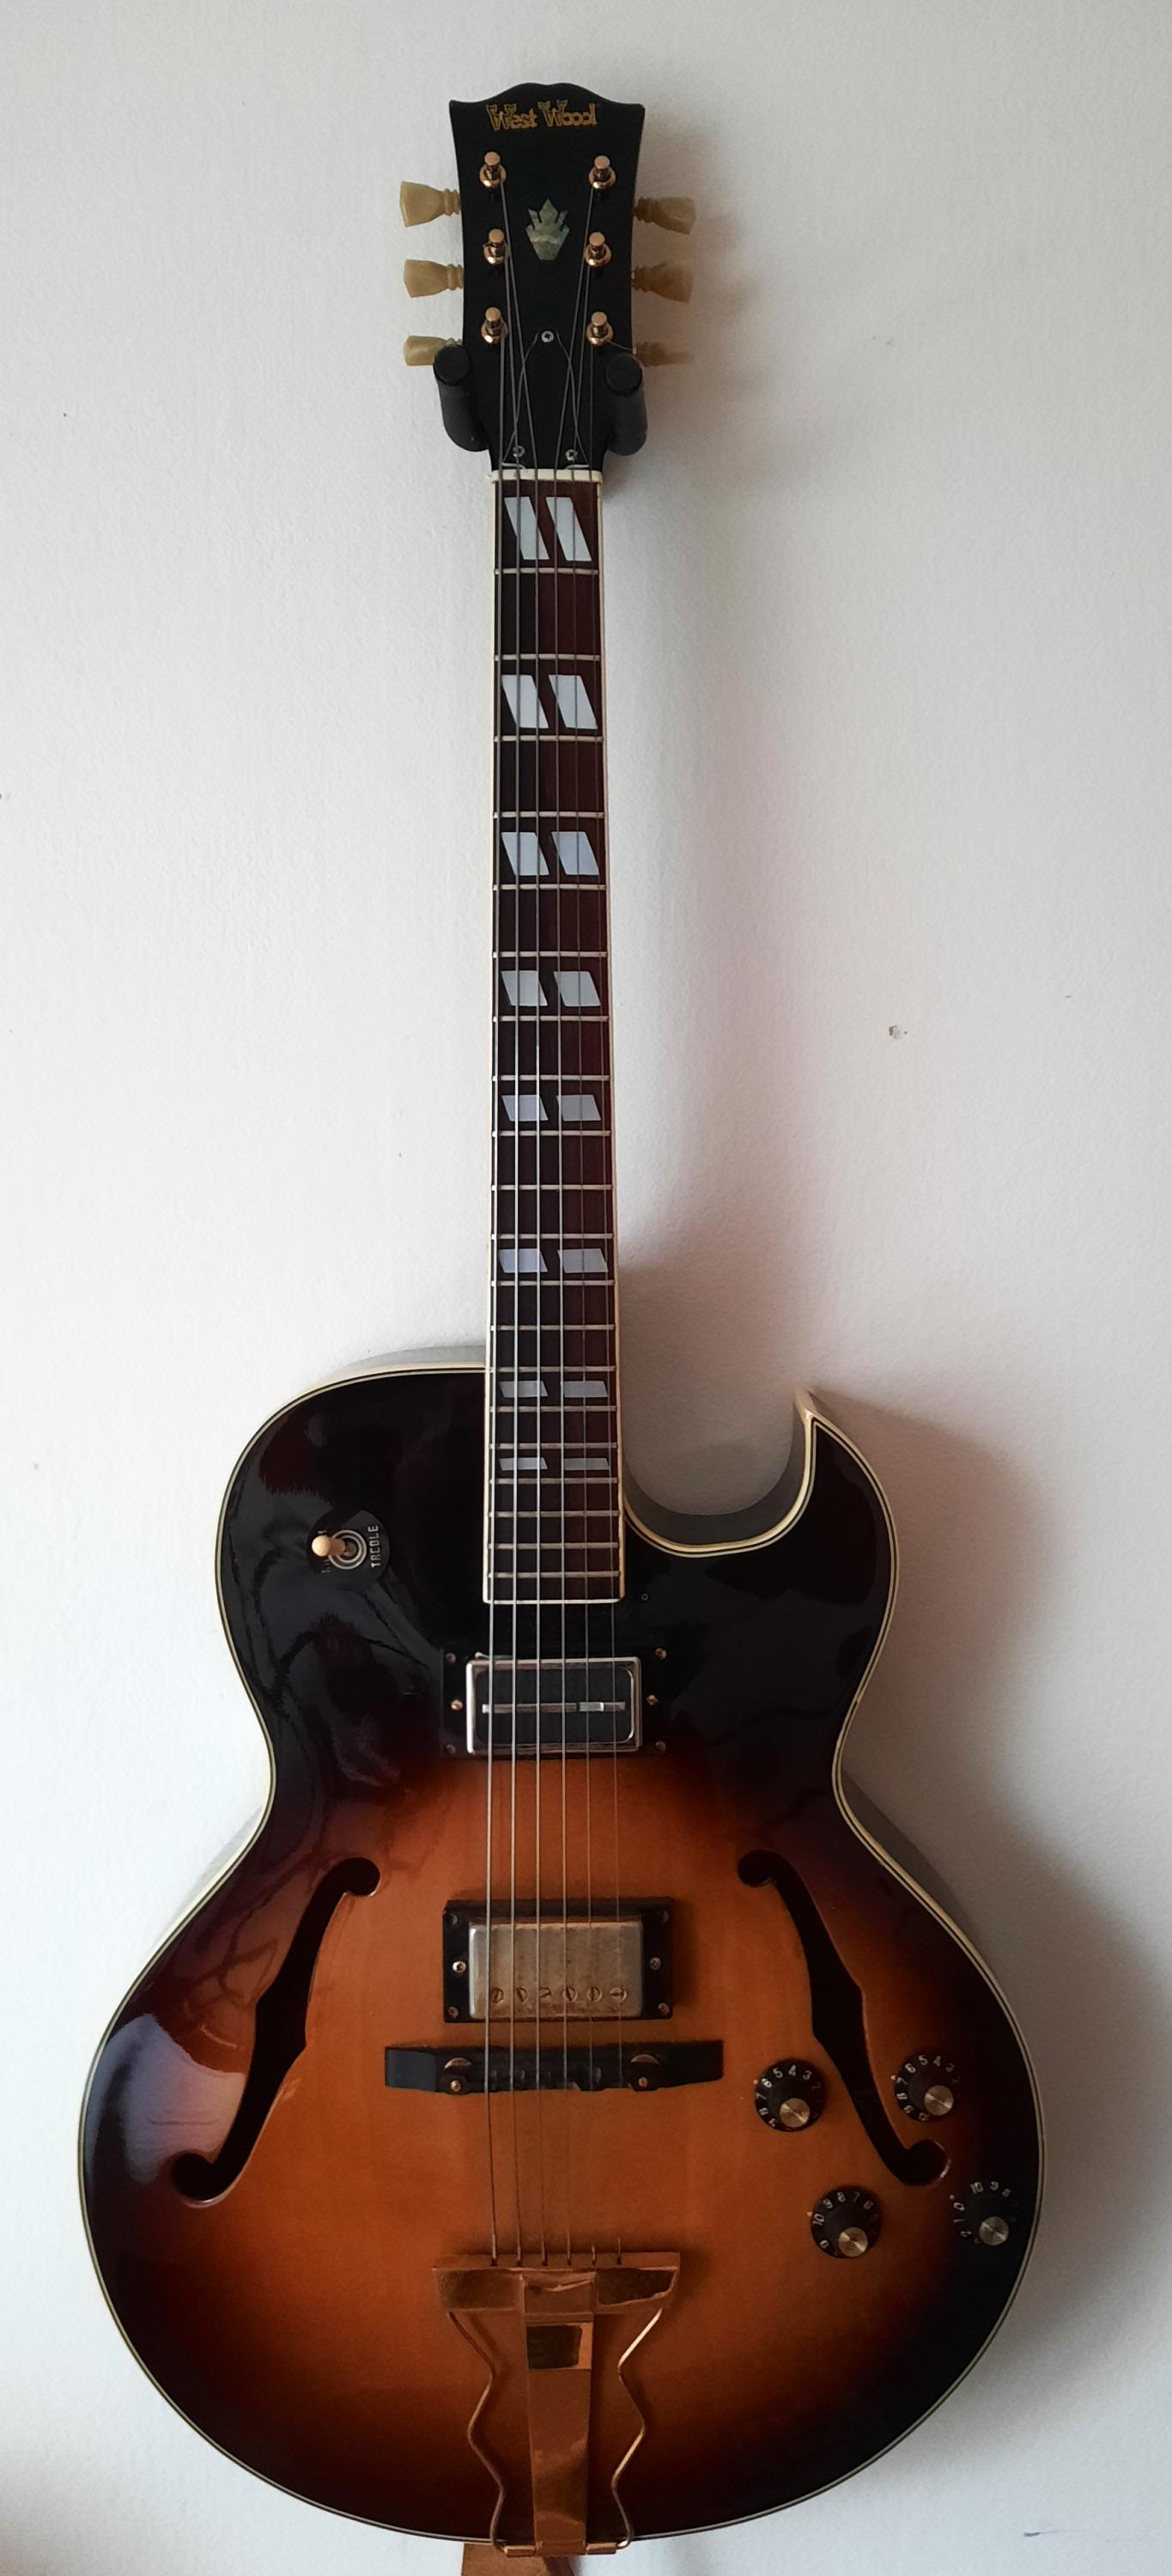 West Wood - ES-175 type guitar-westwood-jpg